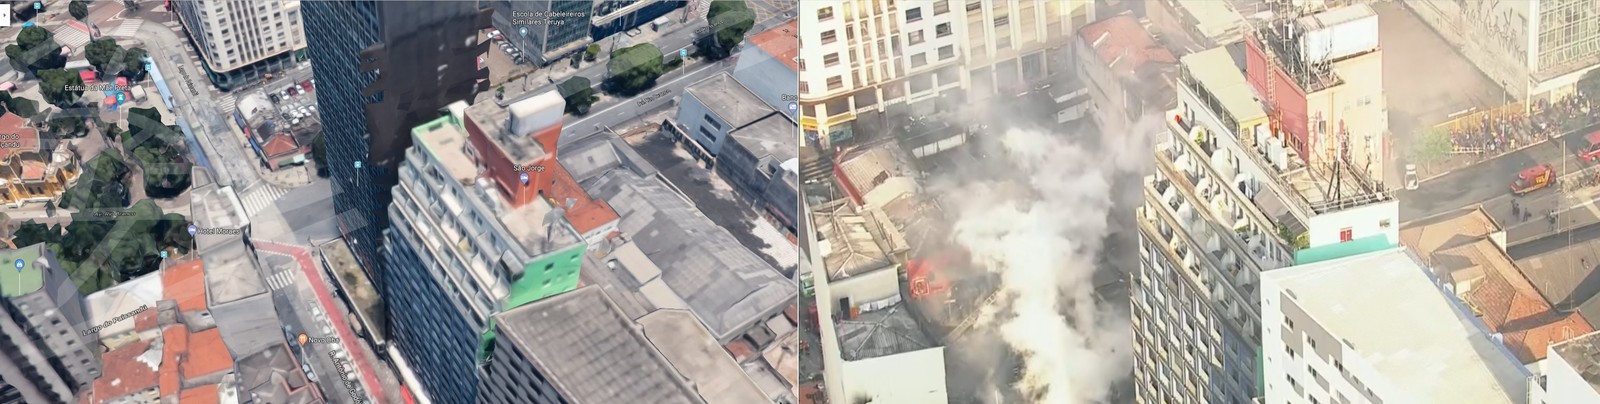 Prédio desaba no centro de SP após incêndio: à esquerda, imóvel antes da tragédia (Foto: Reprodução/TV Globo )